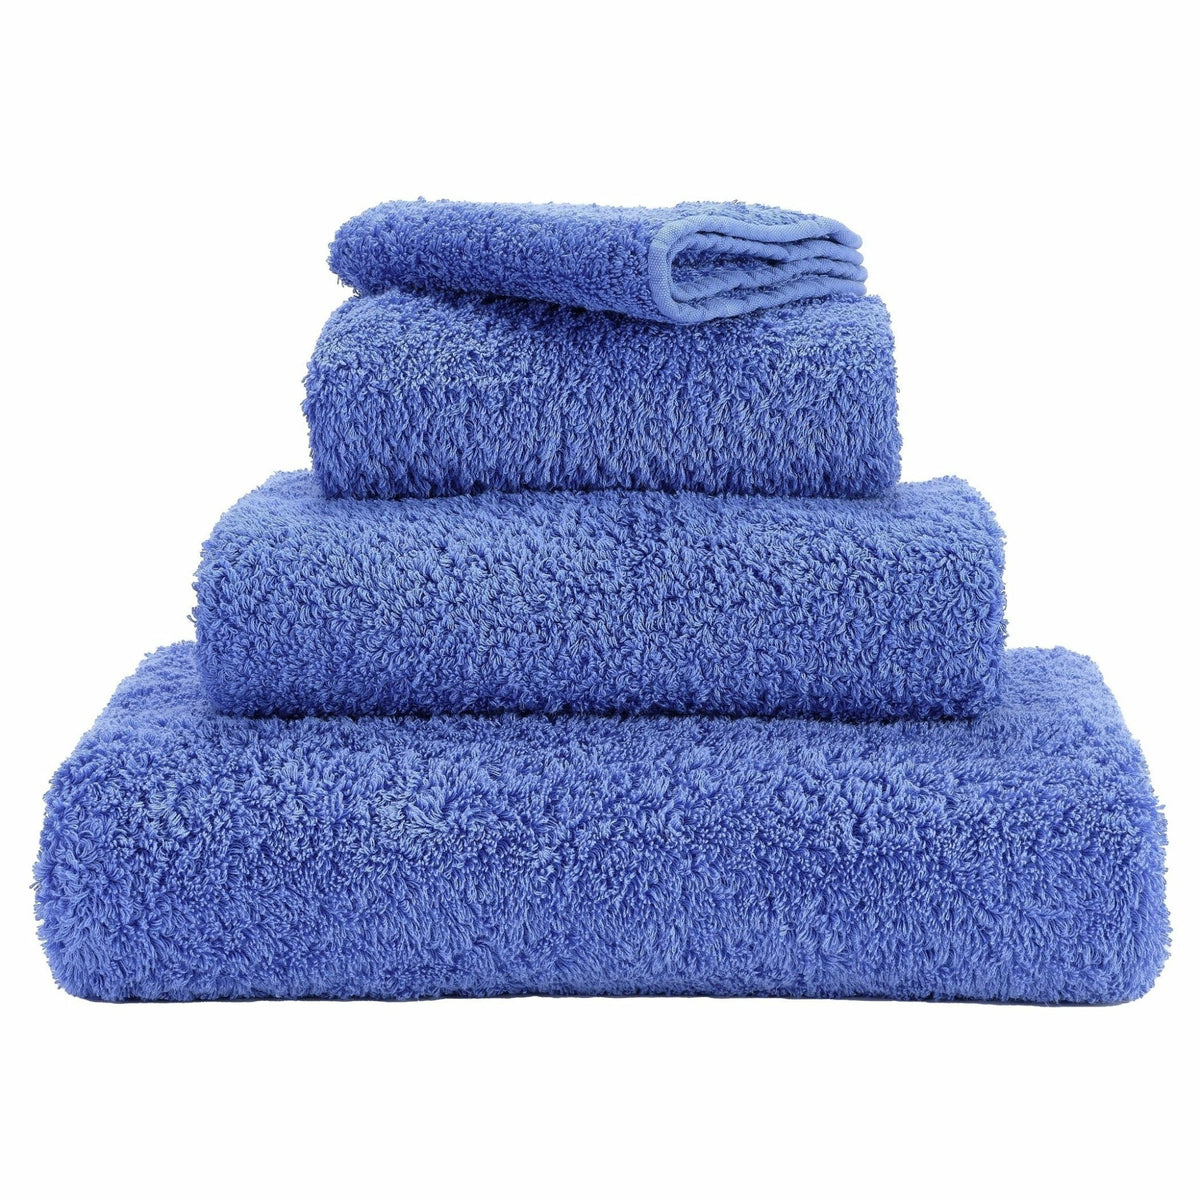 https://flandb.com/cdn/shop/products/Abyss-Super-Pile-Bath-Towels-Marina_1200x.jpg?v=1666343931